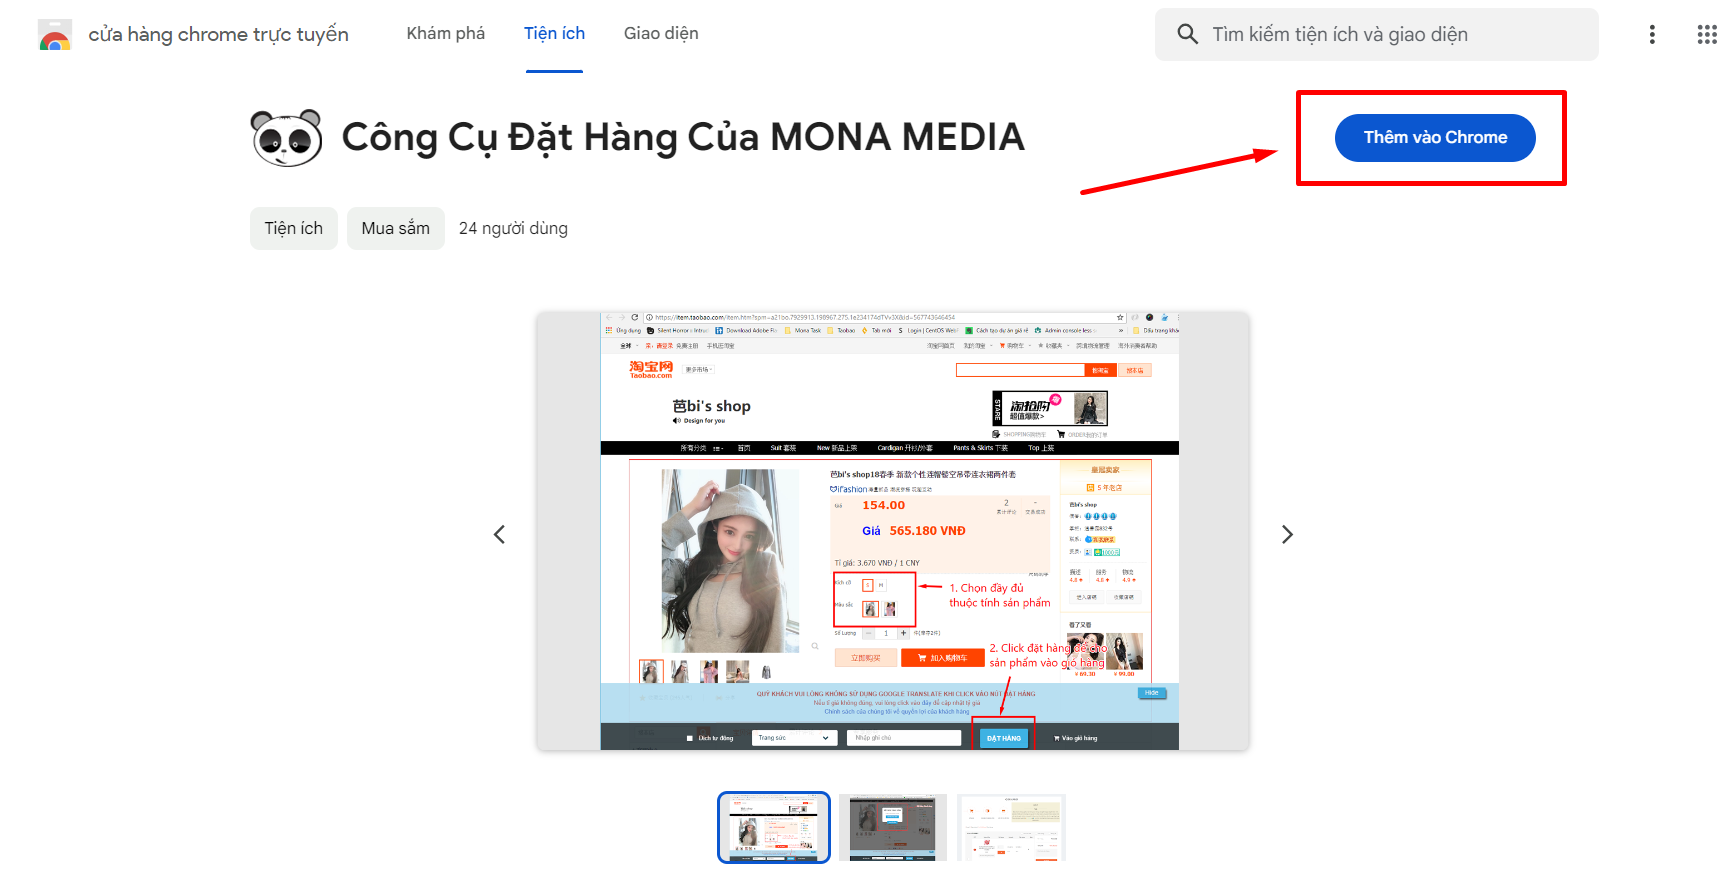 Extension đặt hàng Trung Quốc - Mona Media